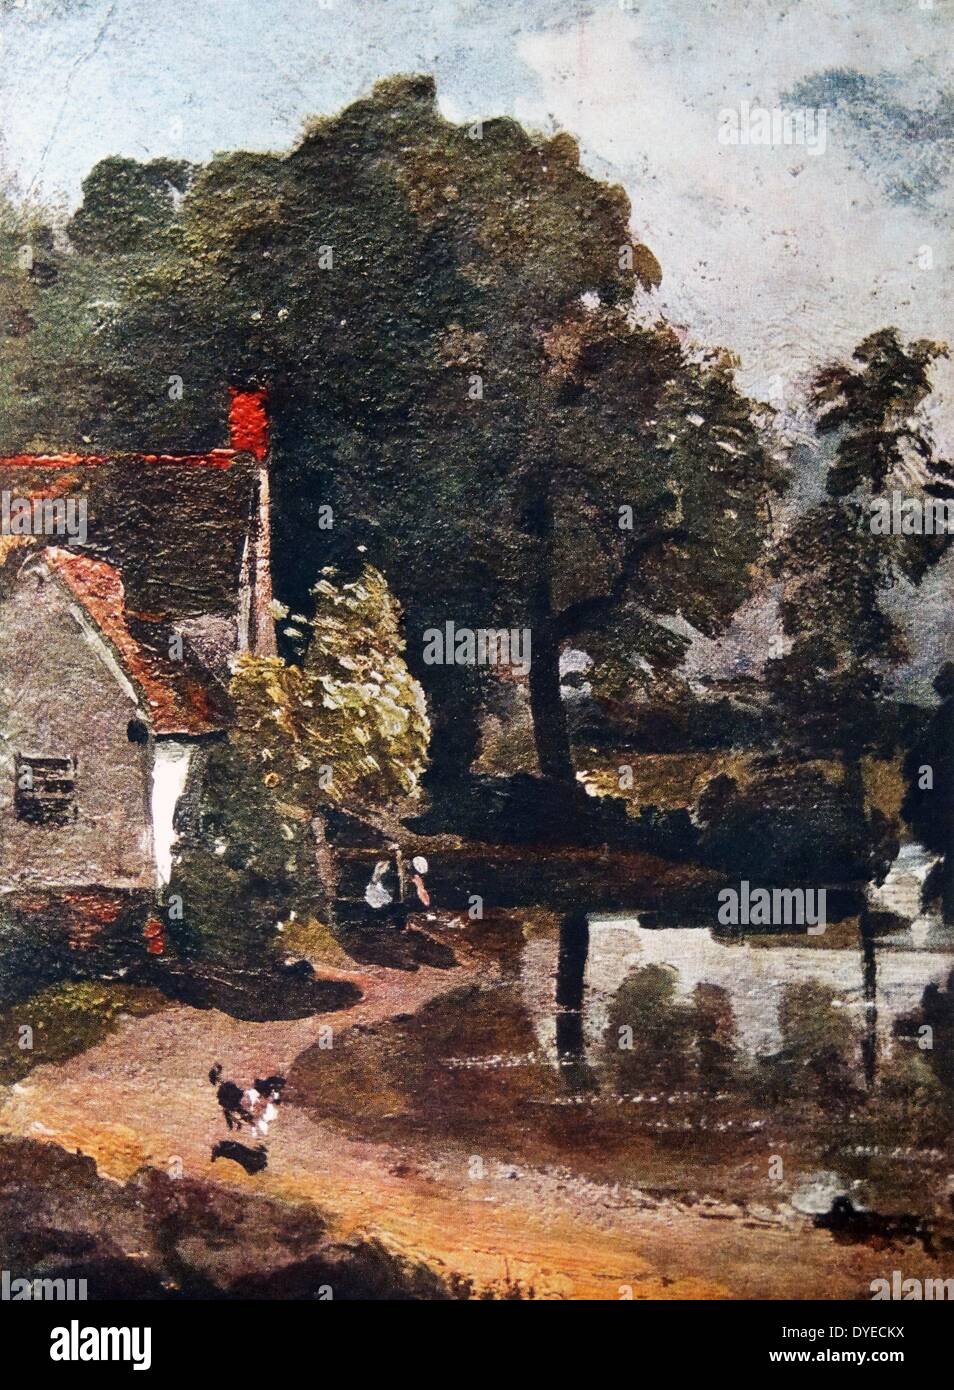 Peinture d'un 16e siècle chalet situé dans la région de Dedham Vale. Maintenant connue sous le nom de Willy Lott's Cottage. Par John Constable (1776 - 1837) peintre romantique anglais connu pour ses peintures de paysage. Datée 1814 Banque D'Images